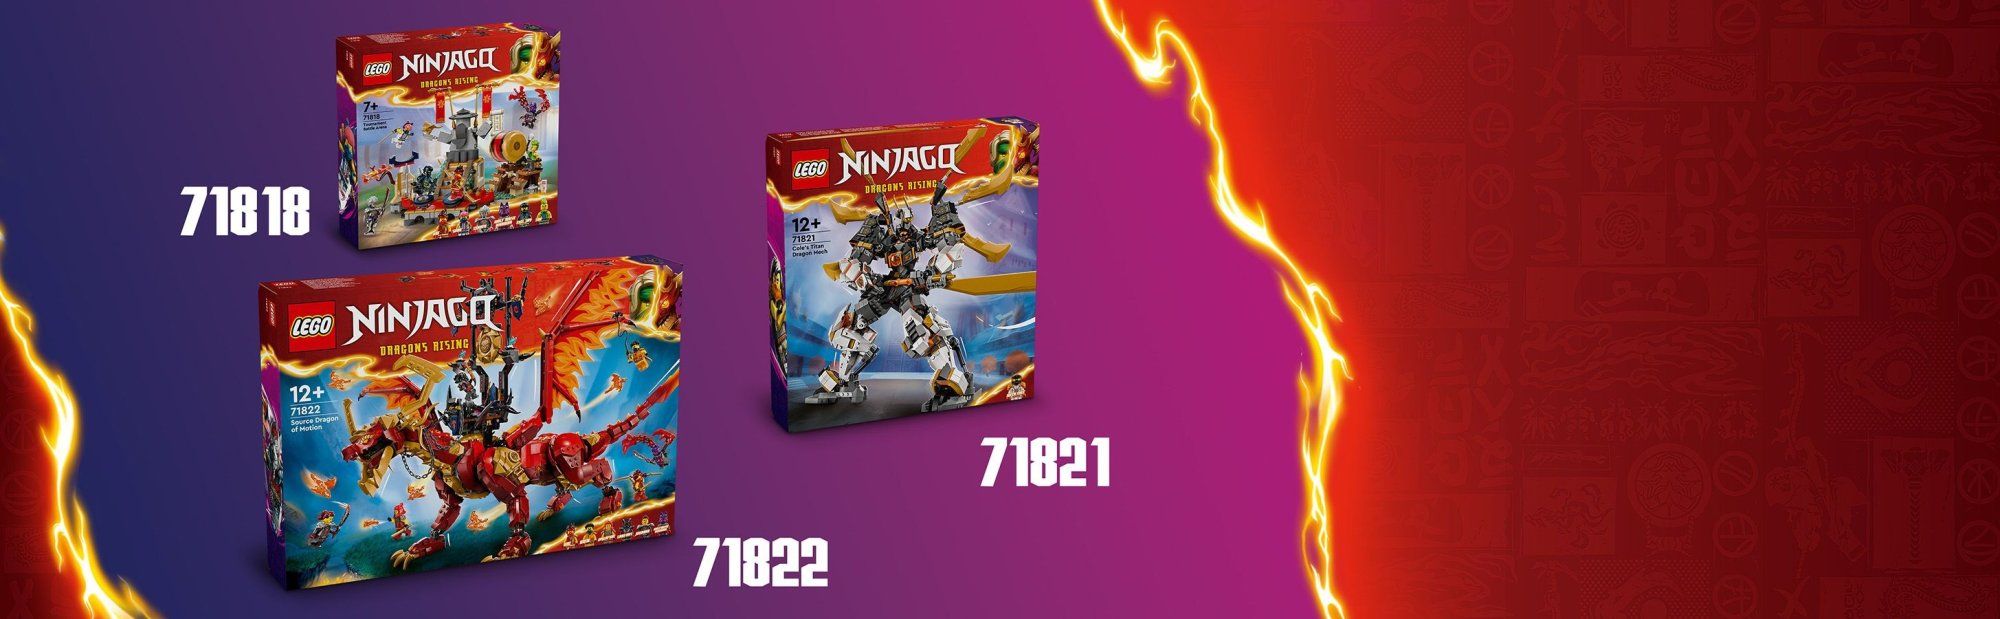 LEGO Ninjago 71821 Coleův titanový dračí oblek